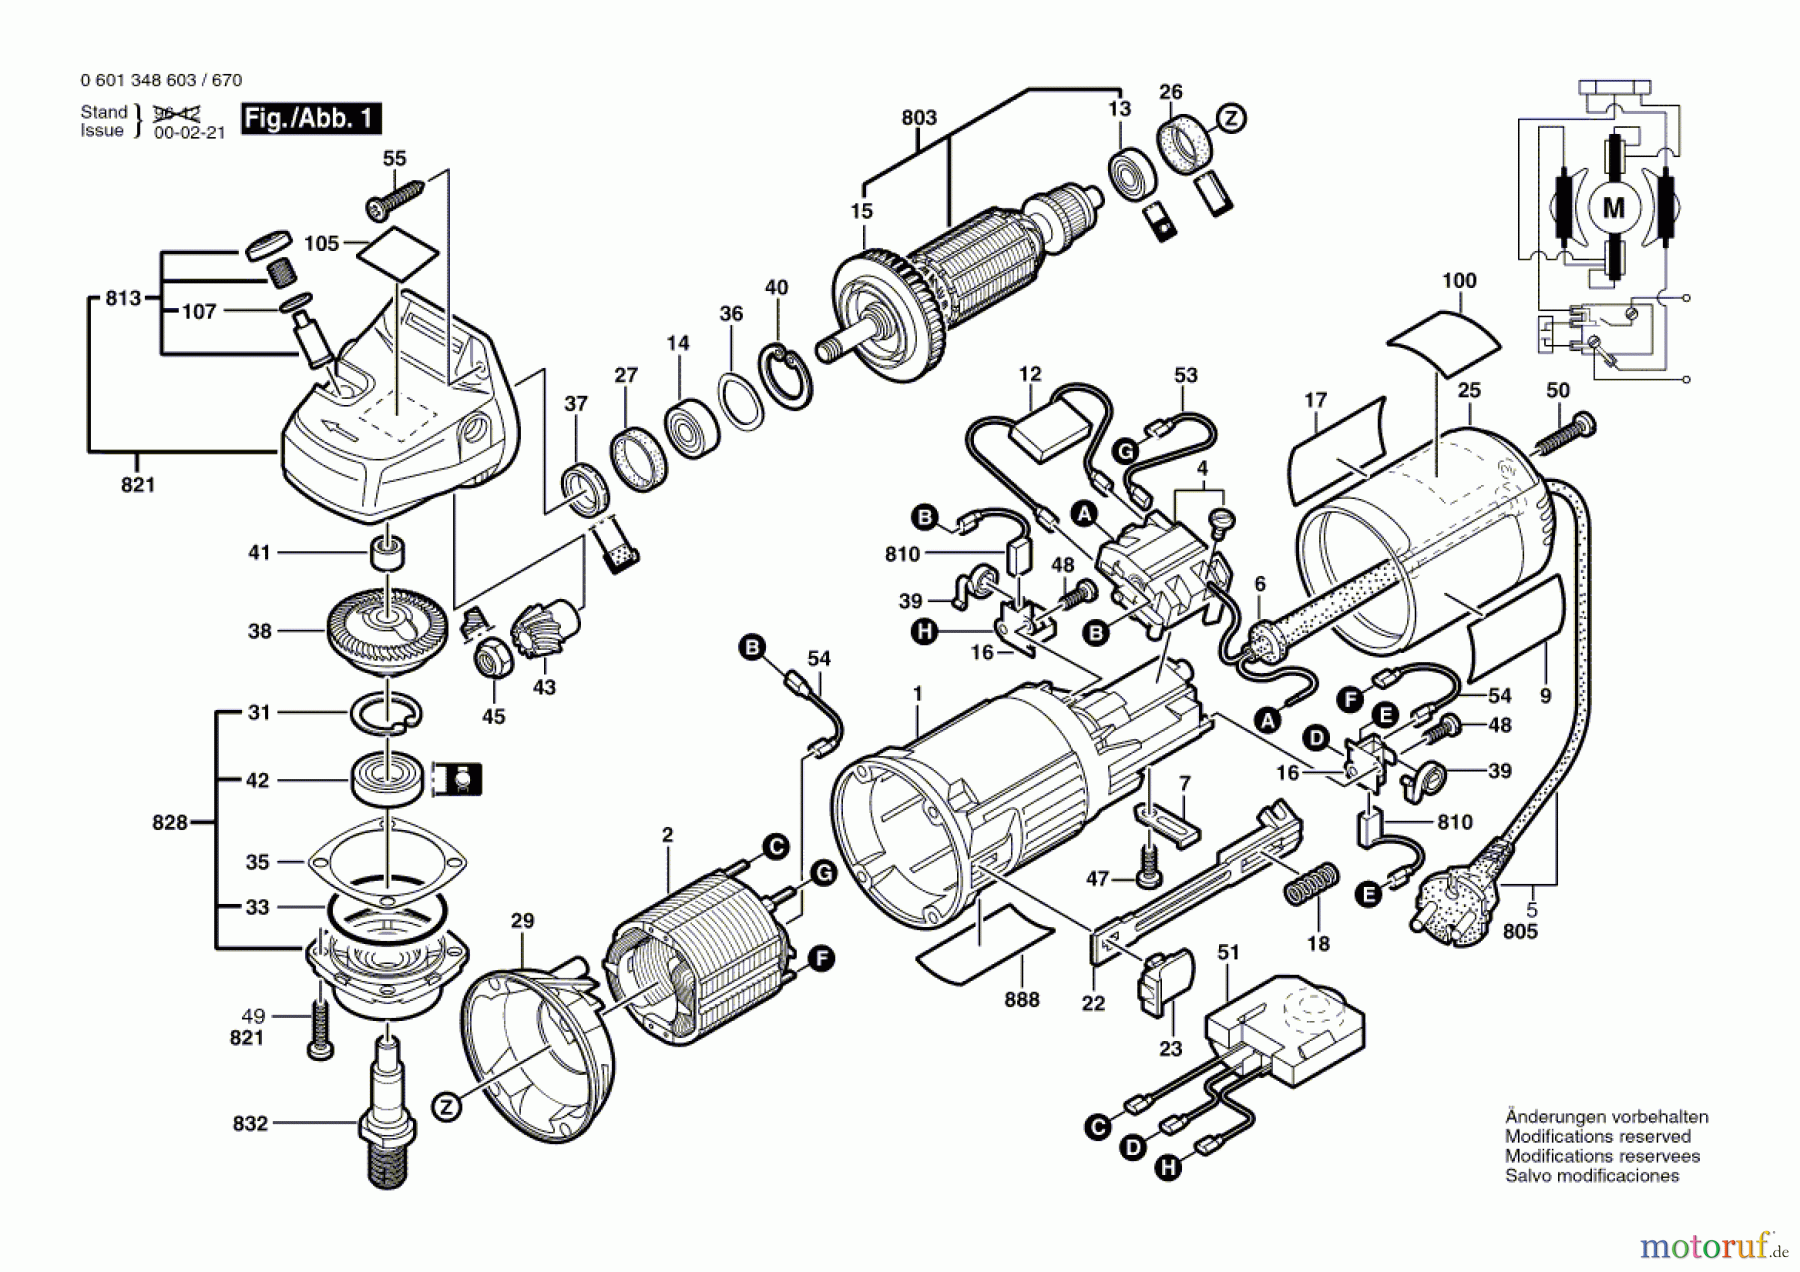  Bosch Werkzeug Winkelschleifer GWS 9-125 C Seite 1